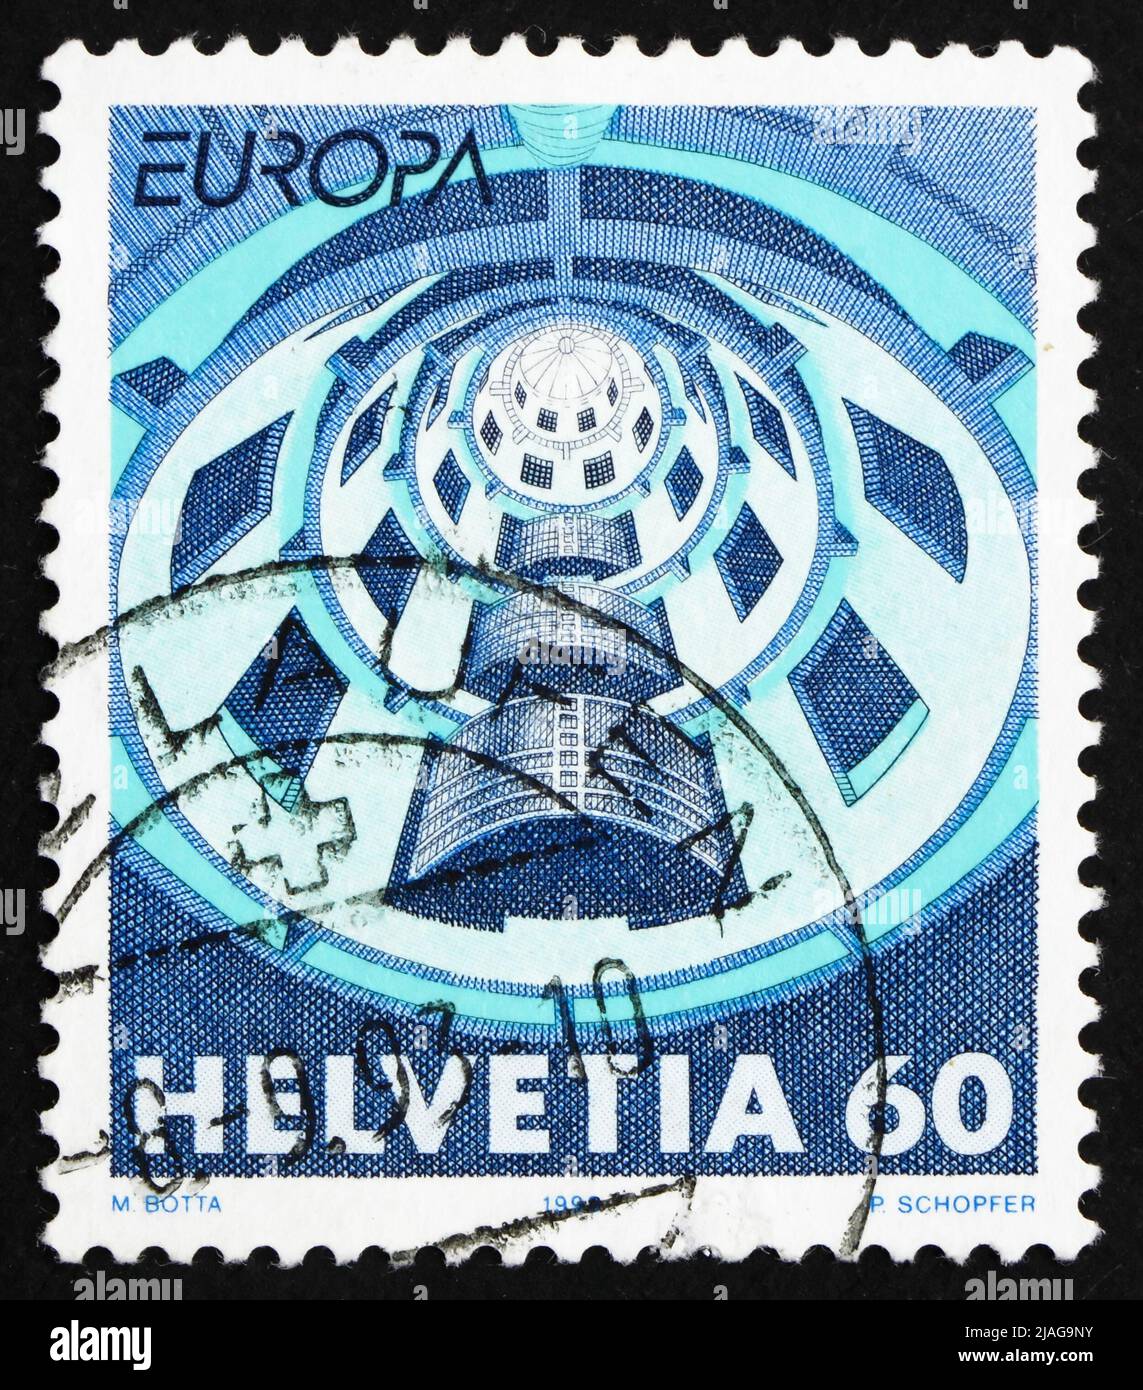 SVIZZERA - CIRCA 1993: Un francobollo stampato in Svizzera mostra Media House, Villeurbanne, Francia, circa 1993 Foto Stock